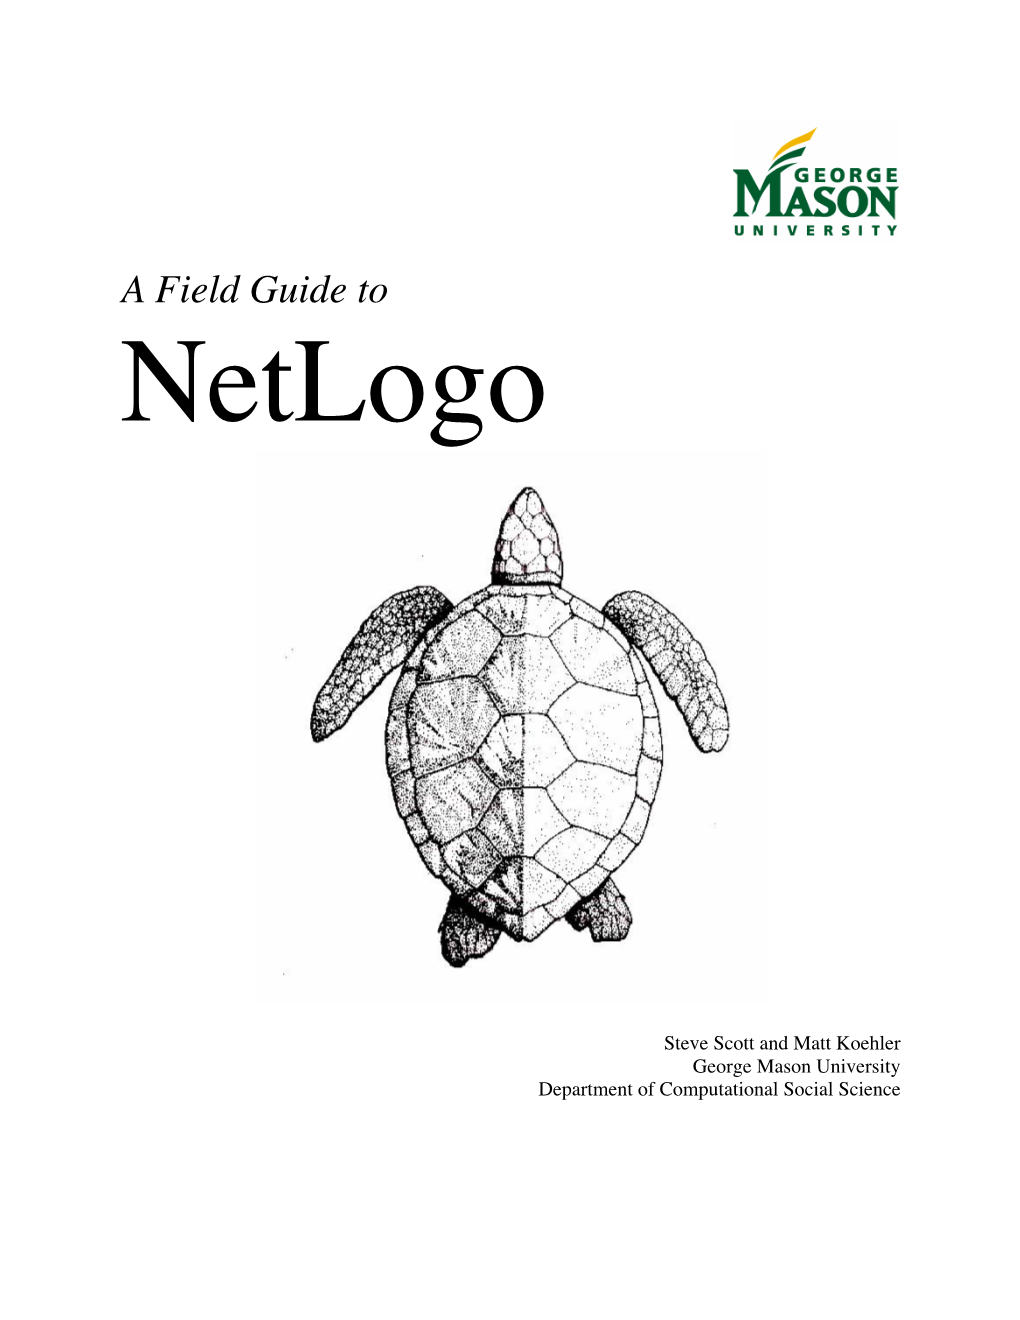 Netlogo Field Guide